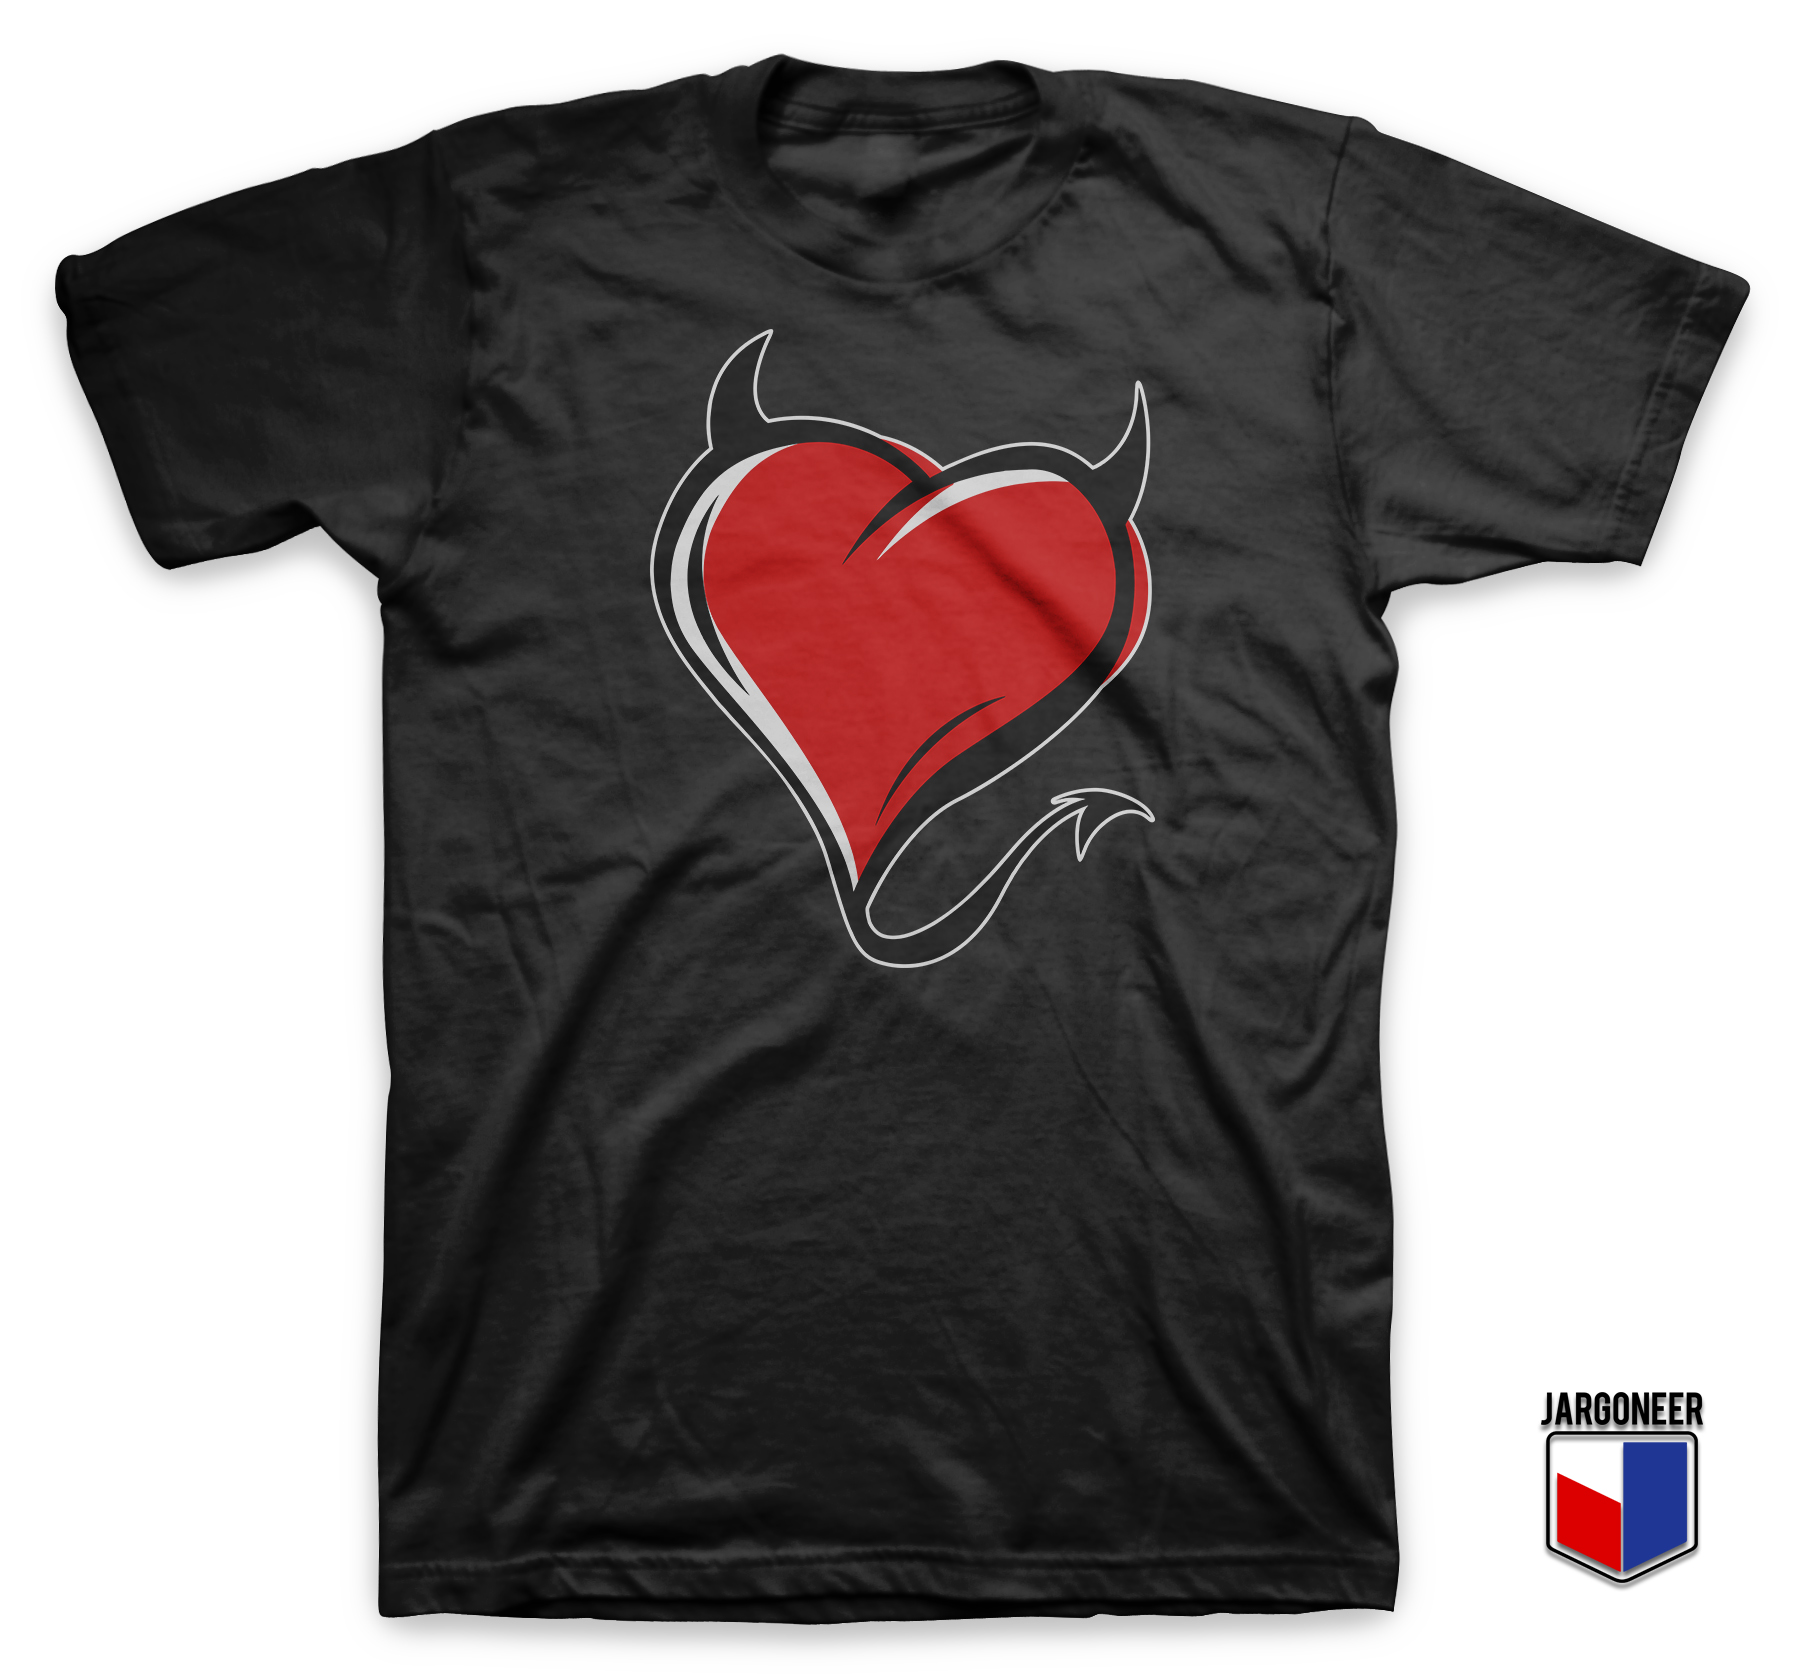 Heart Of The Evil Black T Shirt - Shop Unique Graphic Cool Shirt Designs